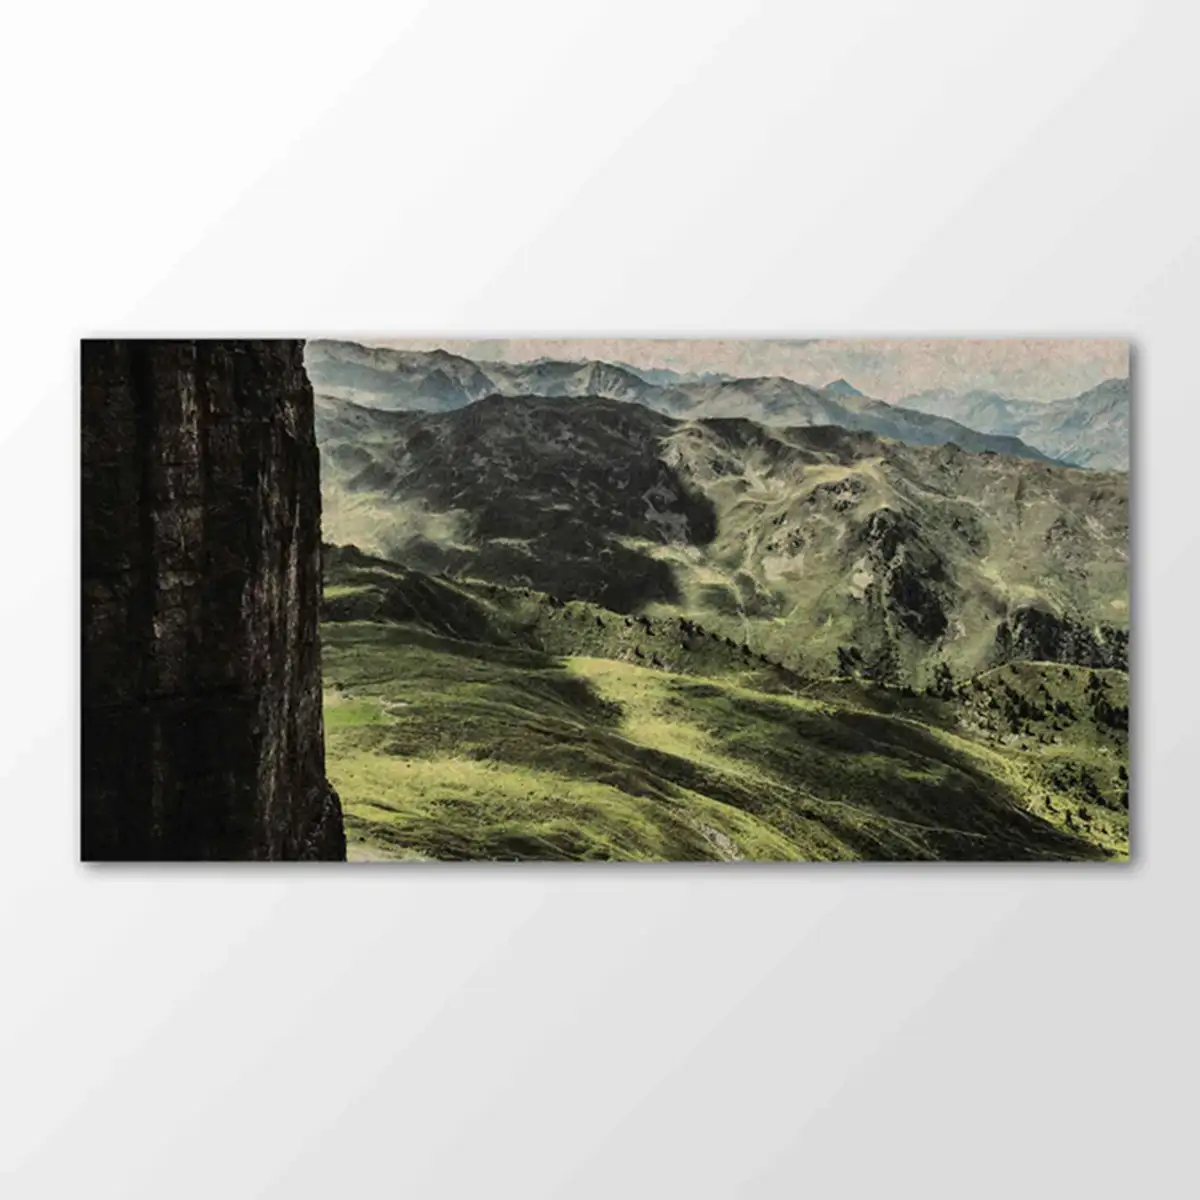 Akustik-Wandbild "Ochsenwand-Panorama" 180x90cm